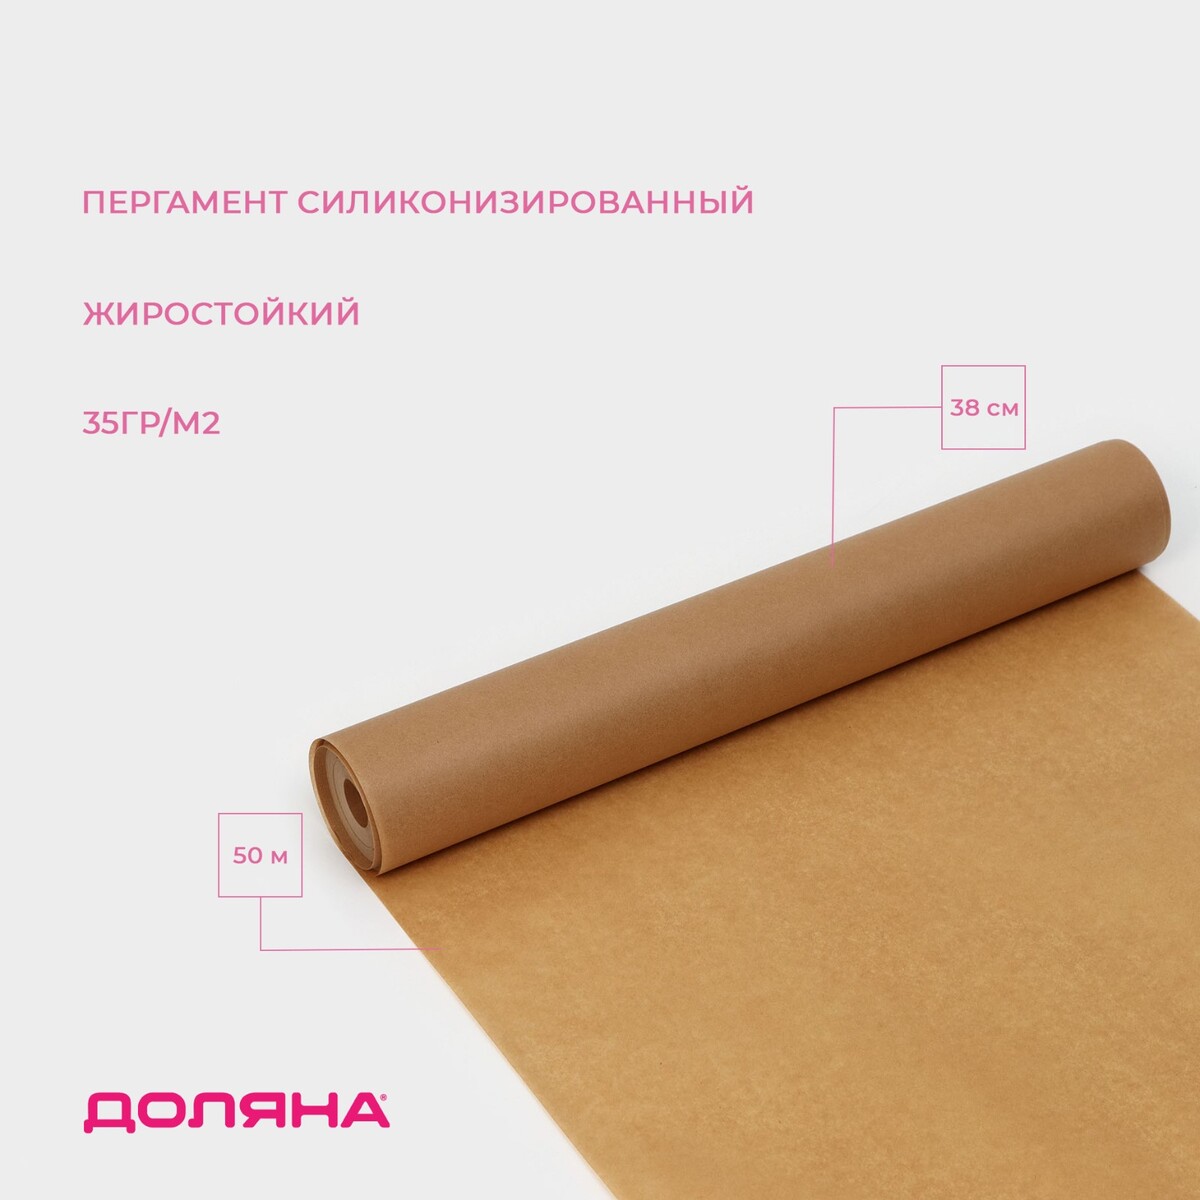 Пергамент силиконизированный доляна, 38 см х 50 м, коричневый, жиростойкий пергамент силиконизированный доляна 28 см×10 м белый жиростойкий